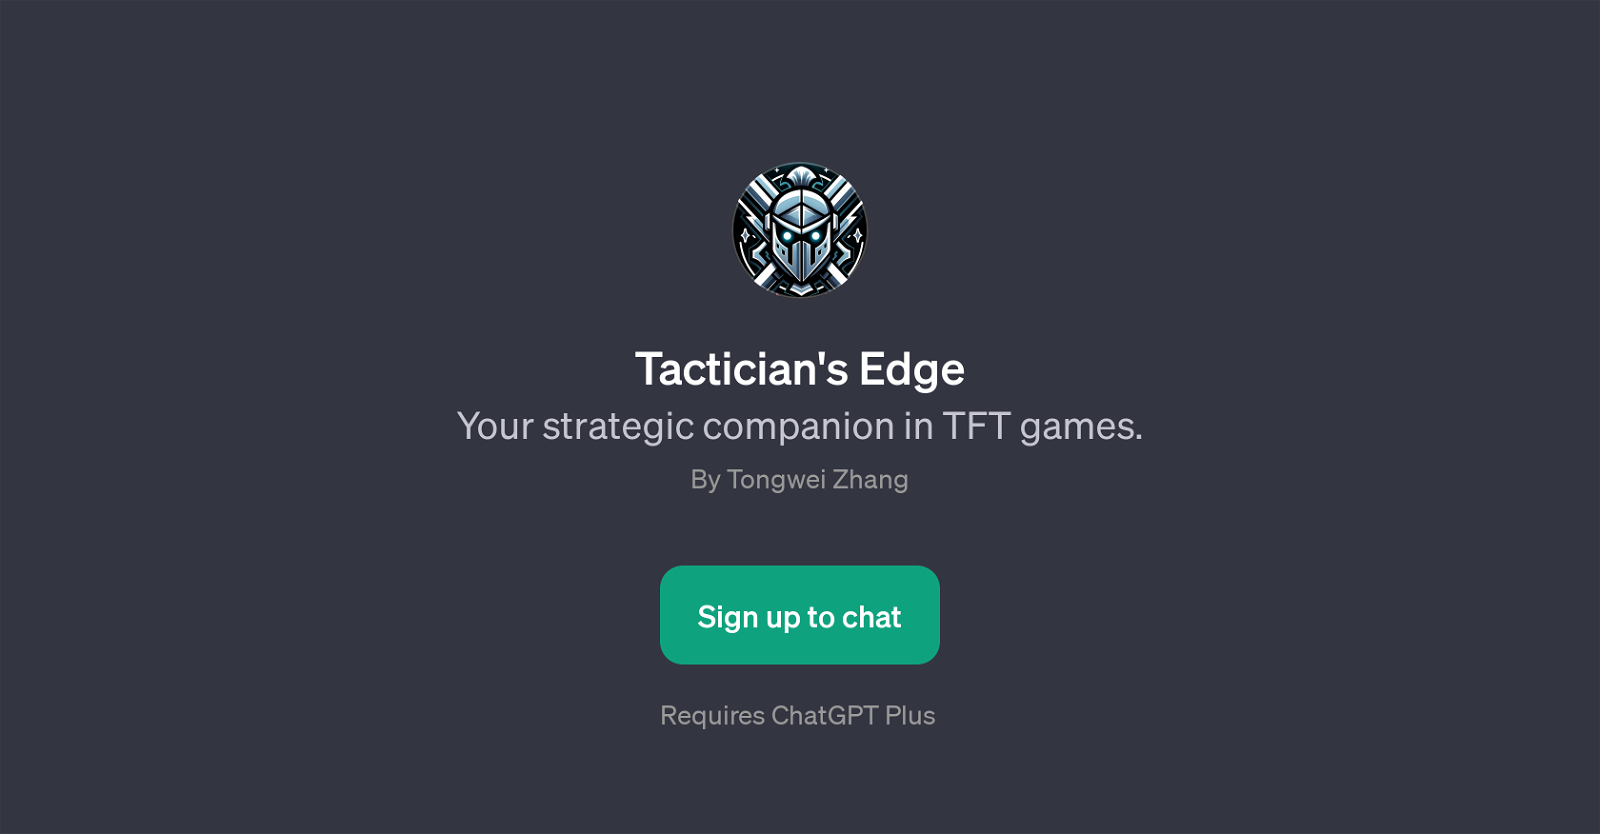 Tactician's Edge website